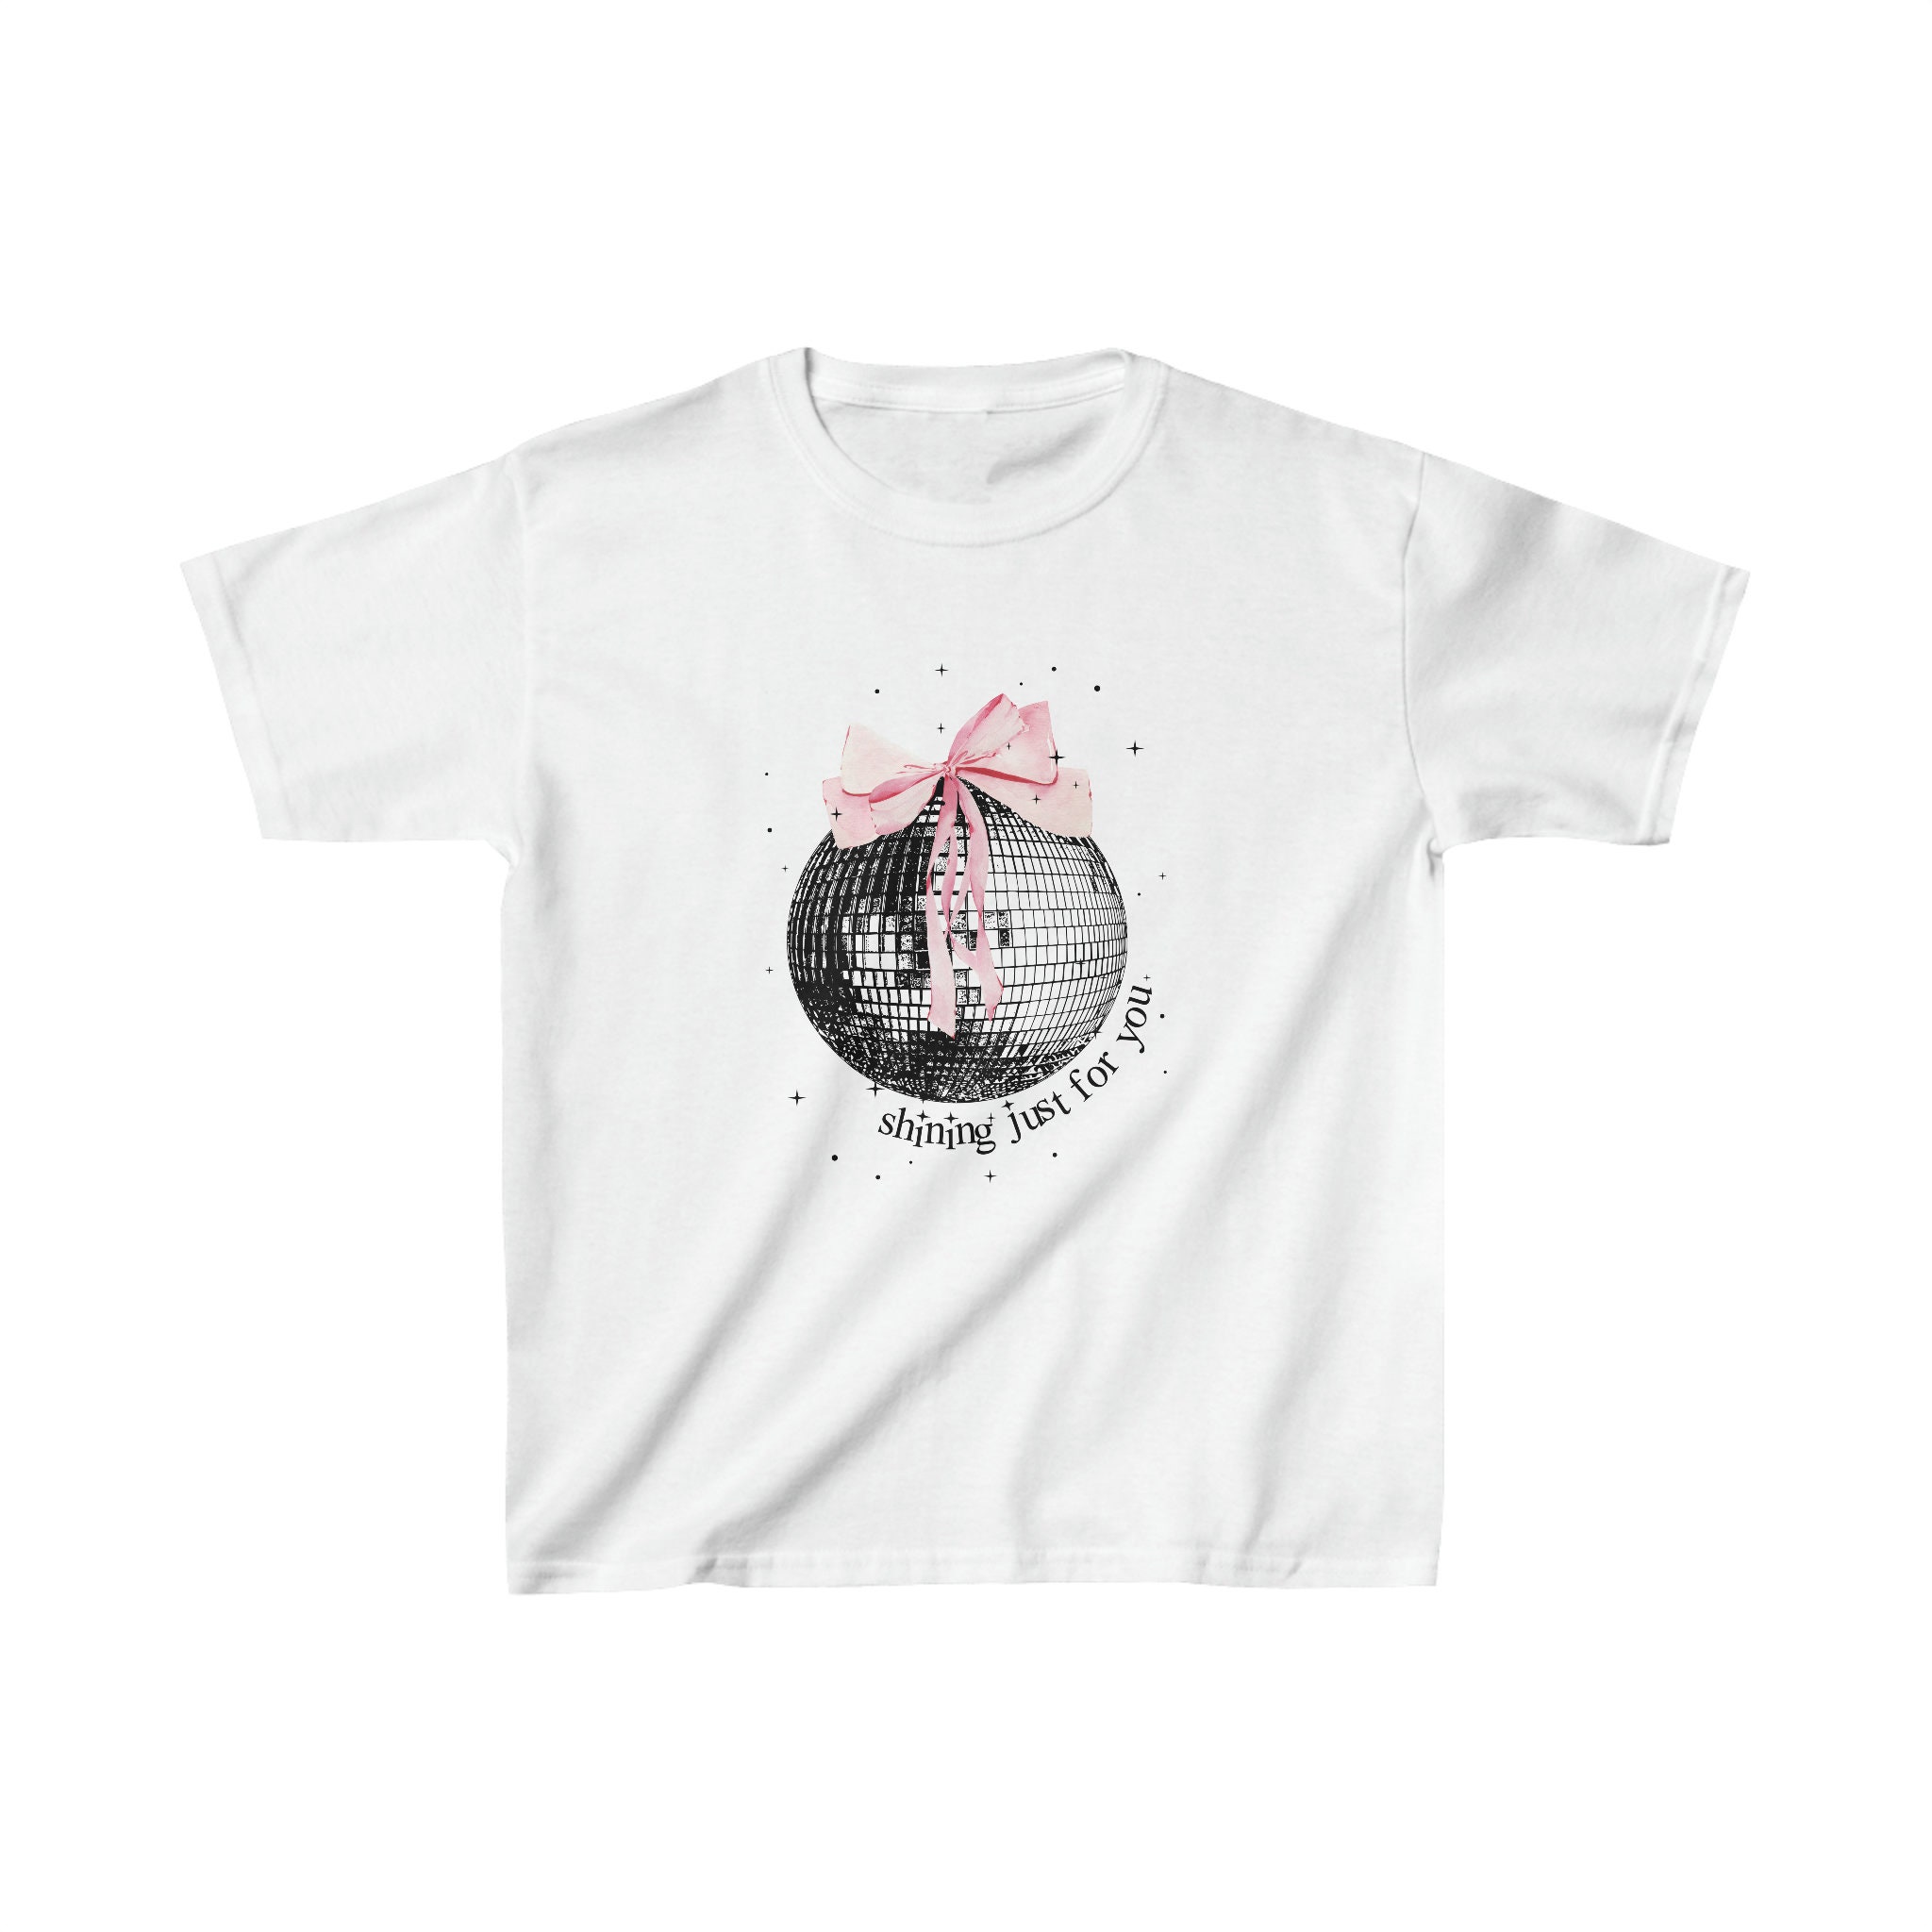 Retro Coquette Bow T-shirt Kawaii Pink Bows Cute Pretty Tee 2000s